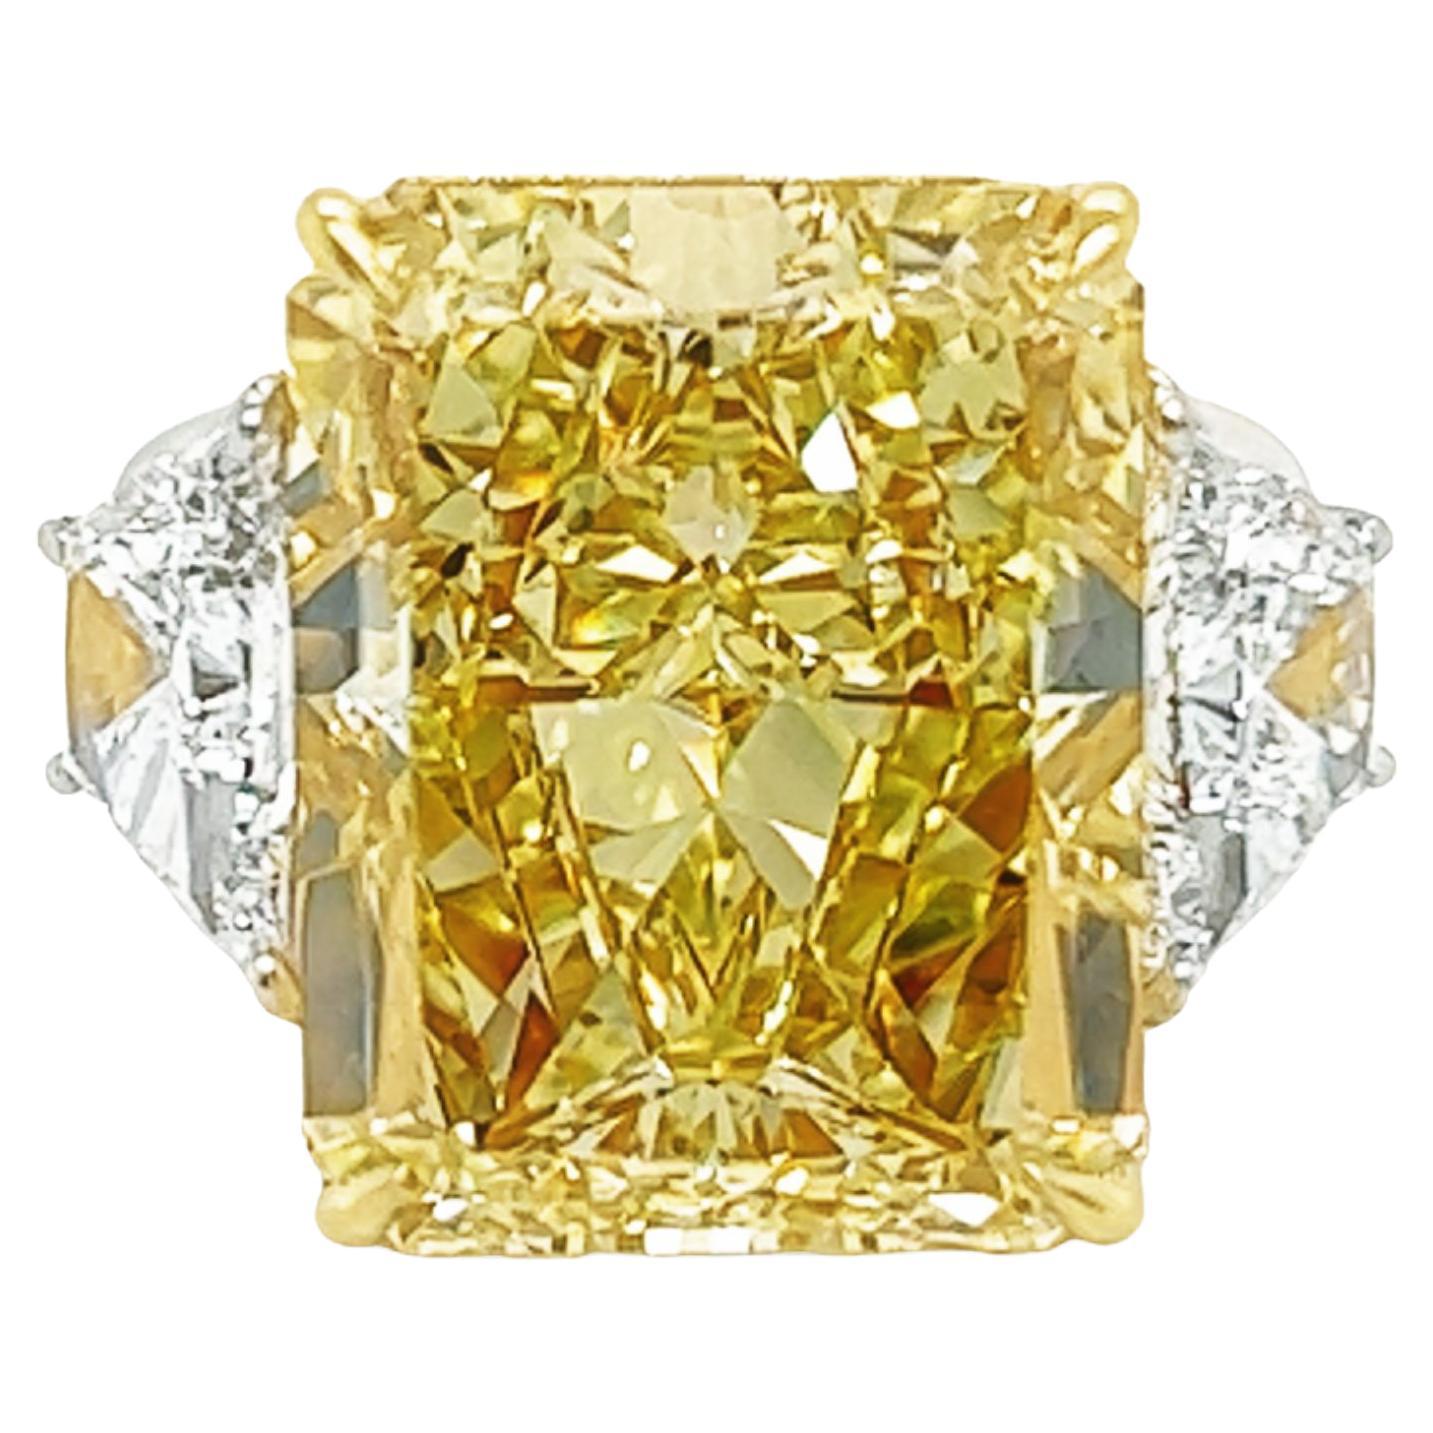 David Rosenberg, diamant de 20,04 carats de couleur jaune intense fantaisie VS2, certifié GIA